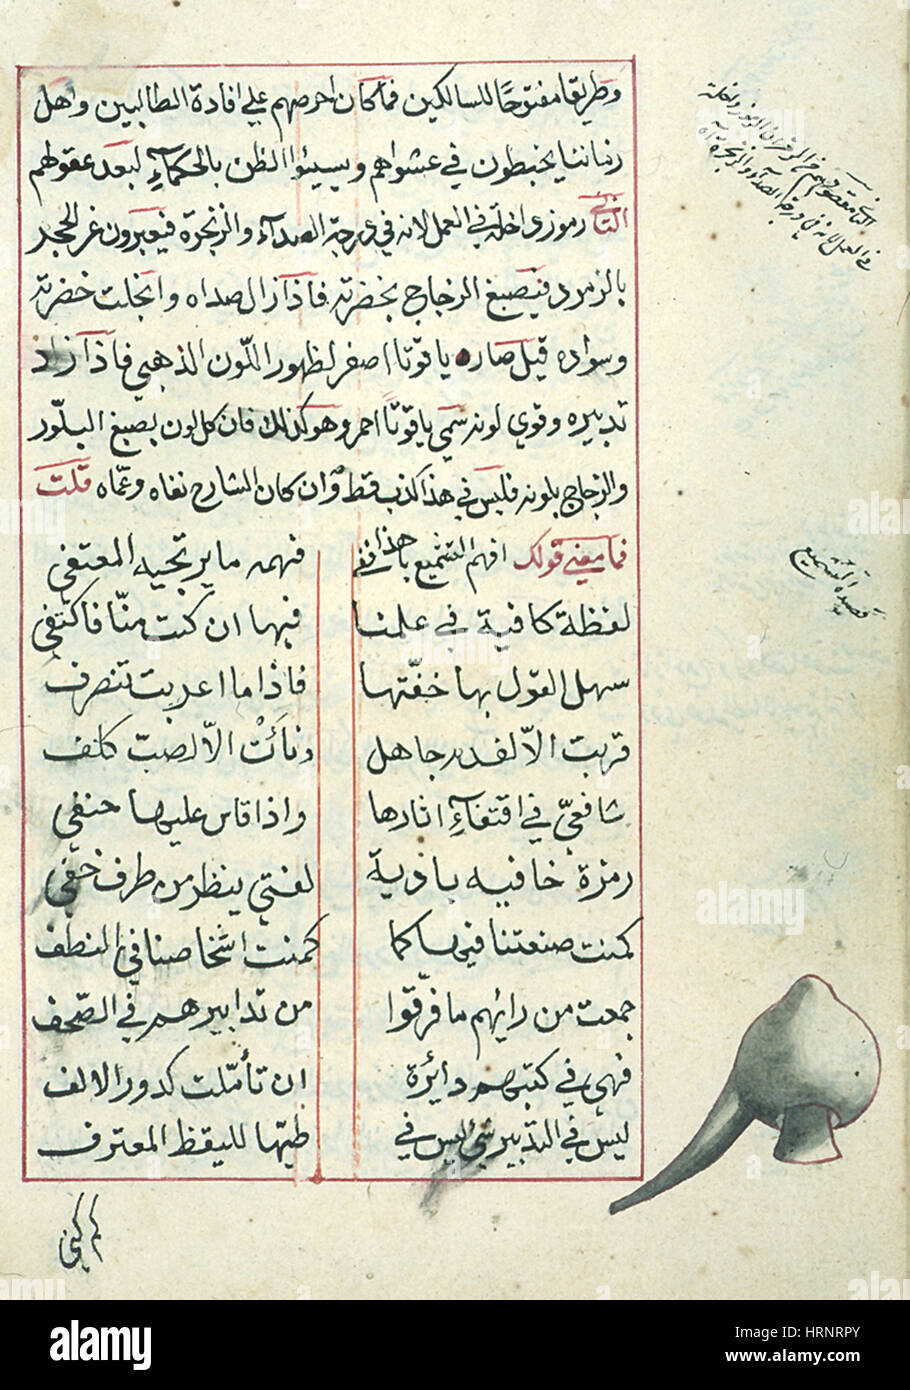 Shudhur al-dhahab, manuscrit alchimie islamique, 12e siècle Banque D'Images